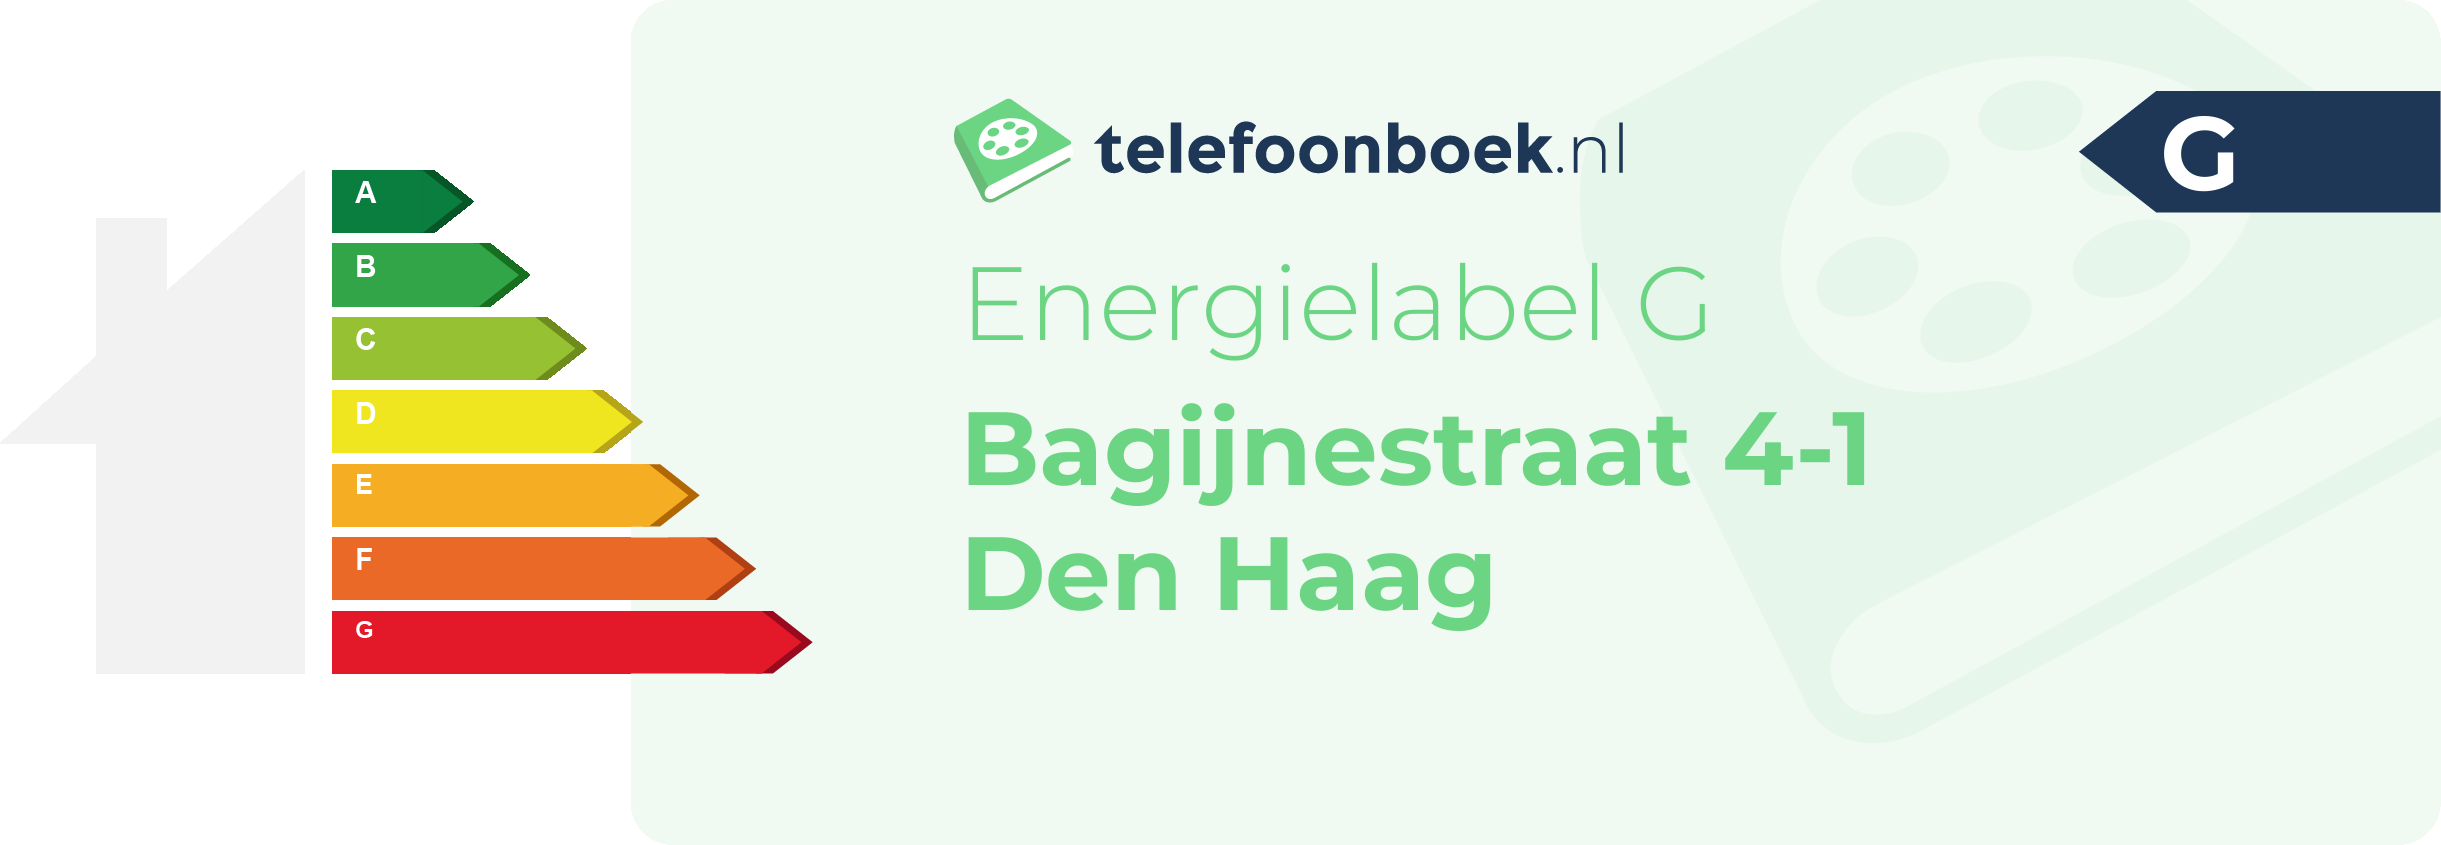 Energielabel Bagijnestraat 4-1 Den Haag